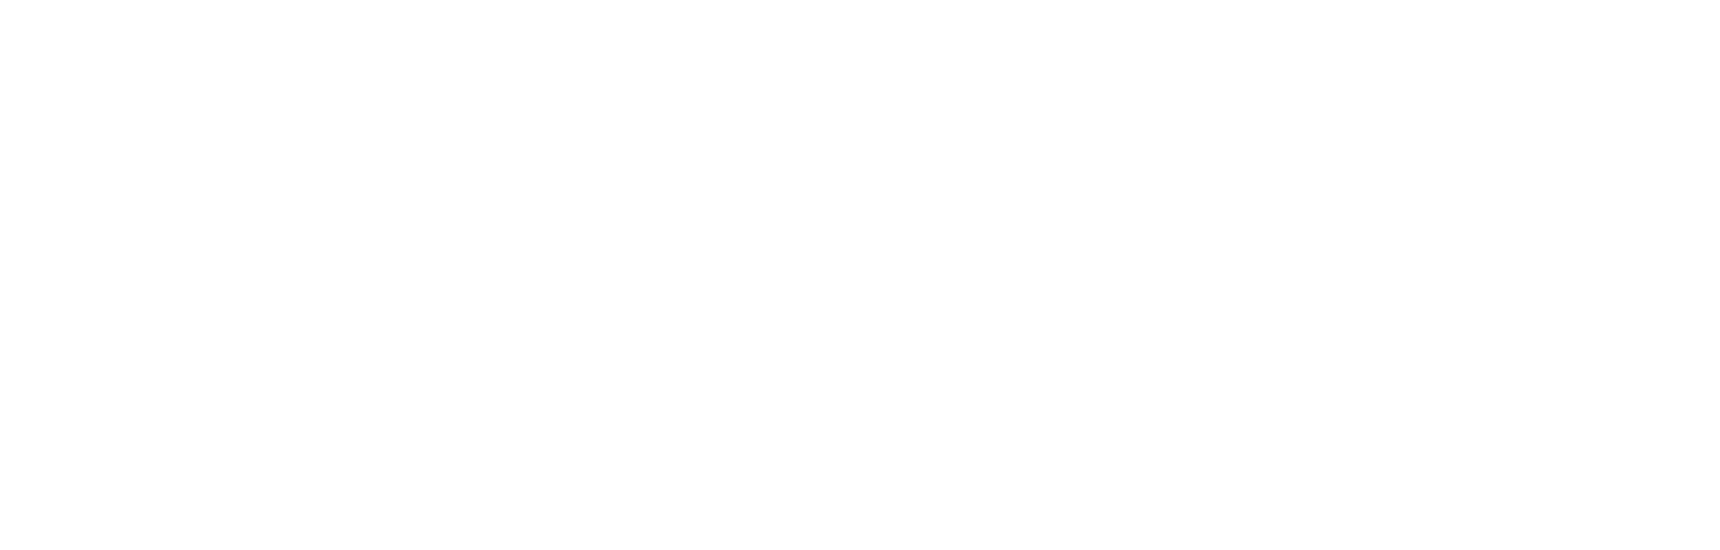 Hospital Visare